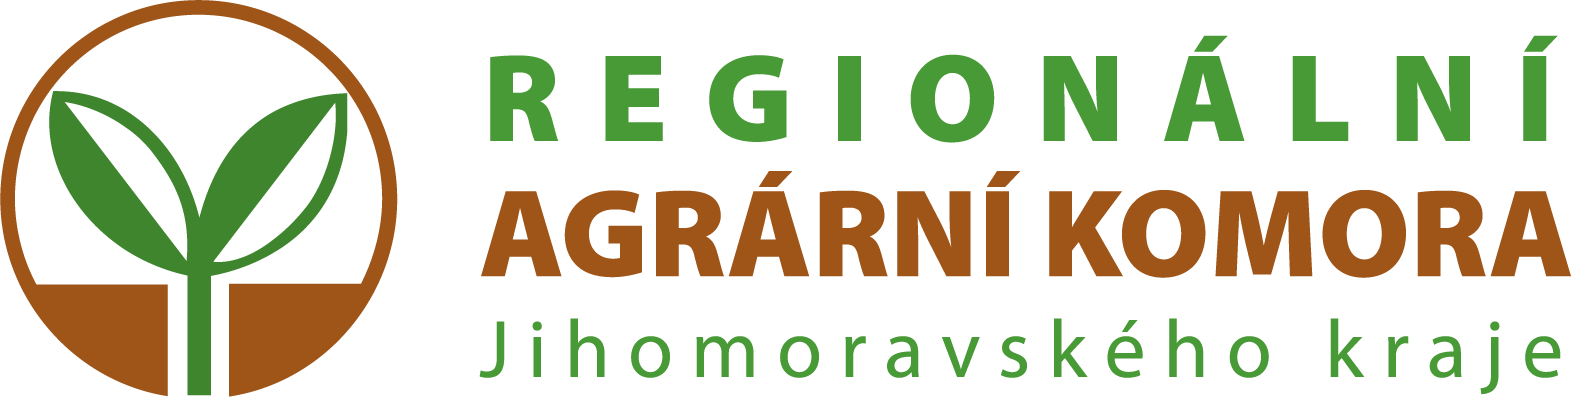 Regionální agrární komora Jihomoravského kraje